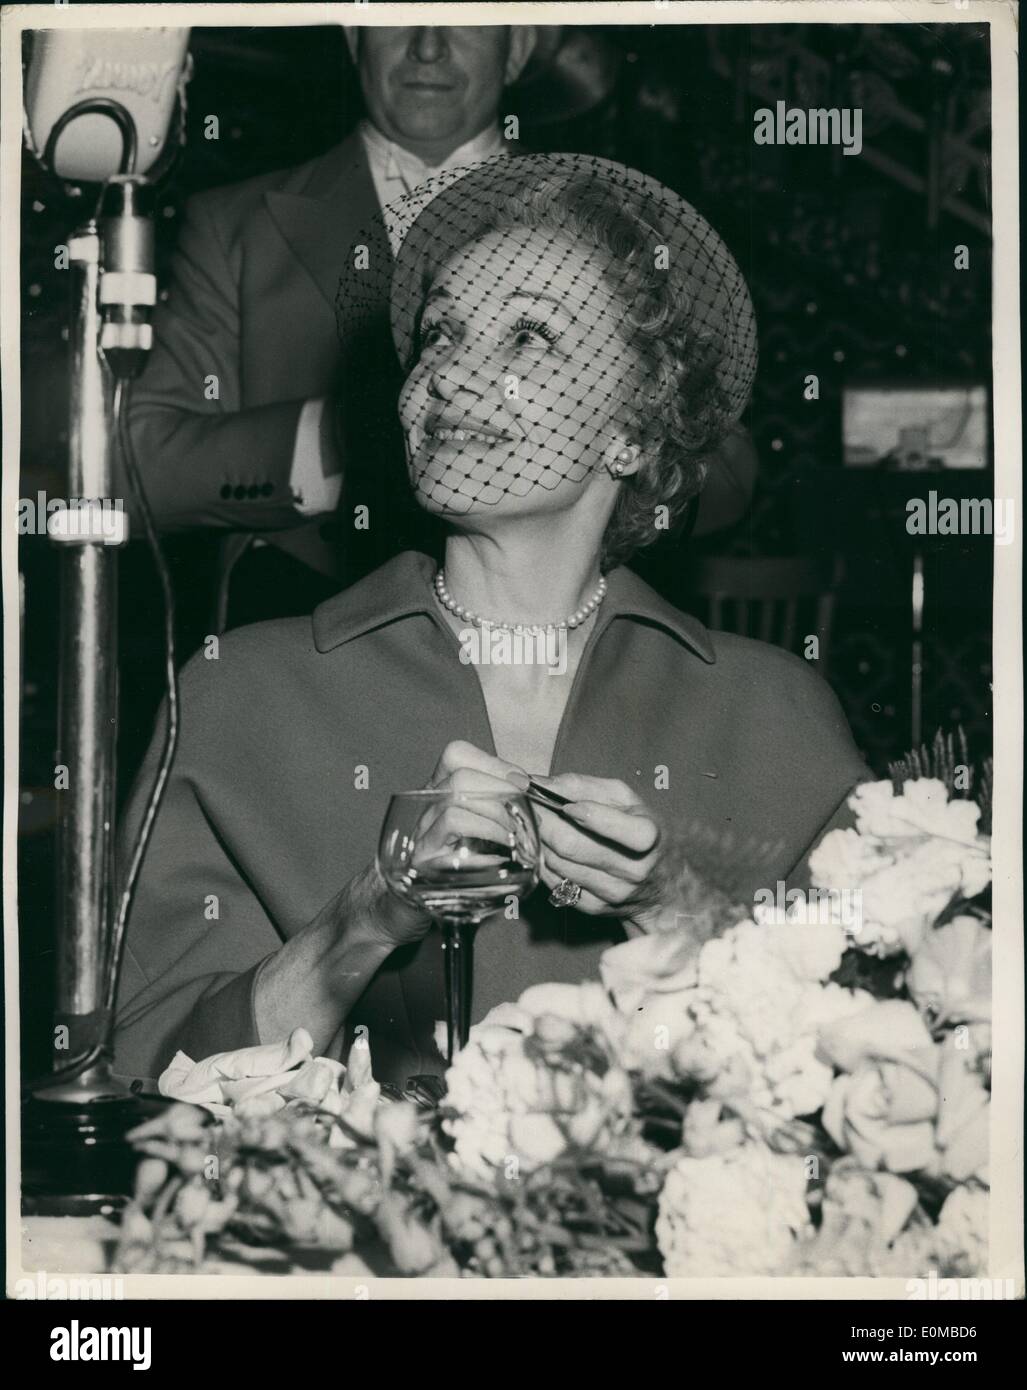 Juin 06, 1954 - Marlene Dietrich arrive à Londres. Assiste à Noel Coward's nouveau spectacle ''Après la balle'' : Marlene Dietrich, le ''grand-mère glamour'' arrive à Londres à partir de New York hier pour apparaître dans un cabaret night club de Londres lundi. Hier soir, elle est allée avec Noel Coward voir son maintenant jouer ''Après la balle'' au Globe Theatre. La photo montre la Marlene Dietrich escorté par Noel Coward arrive pour le spectacle. Banque D'Images